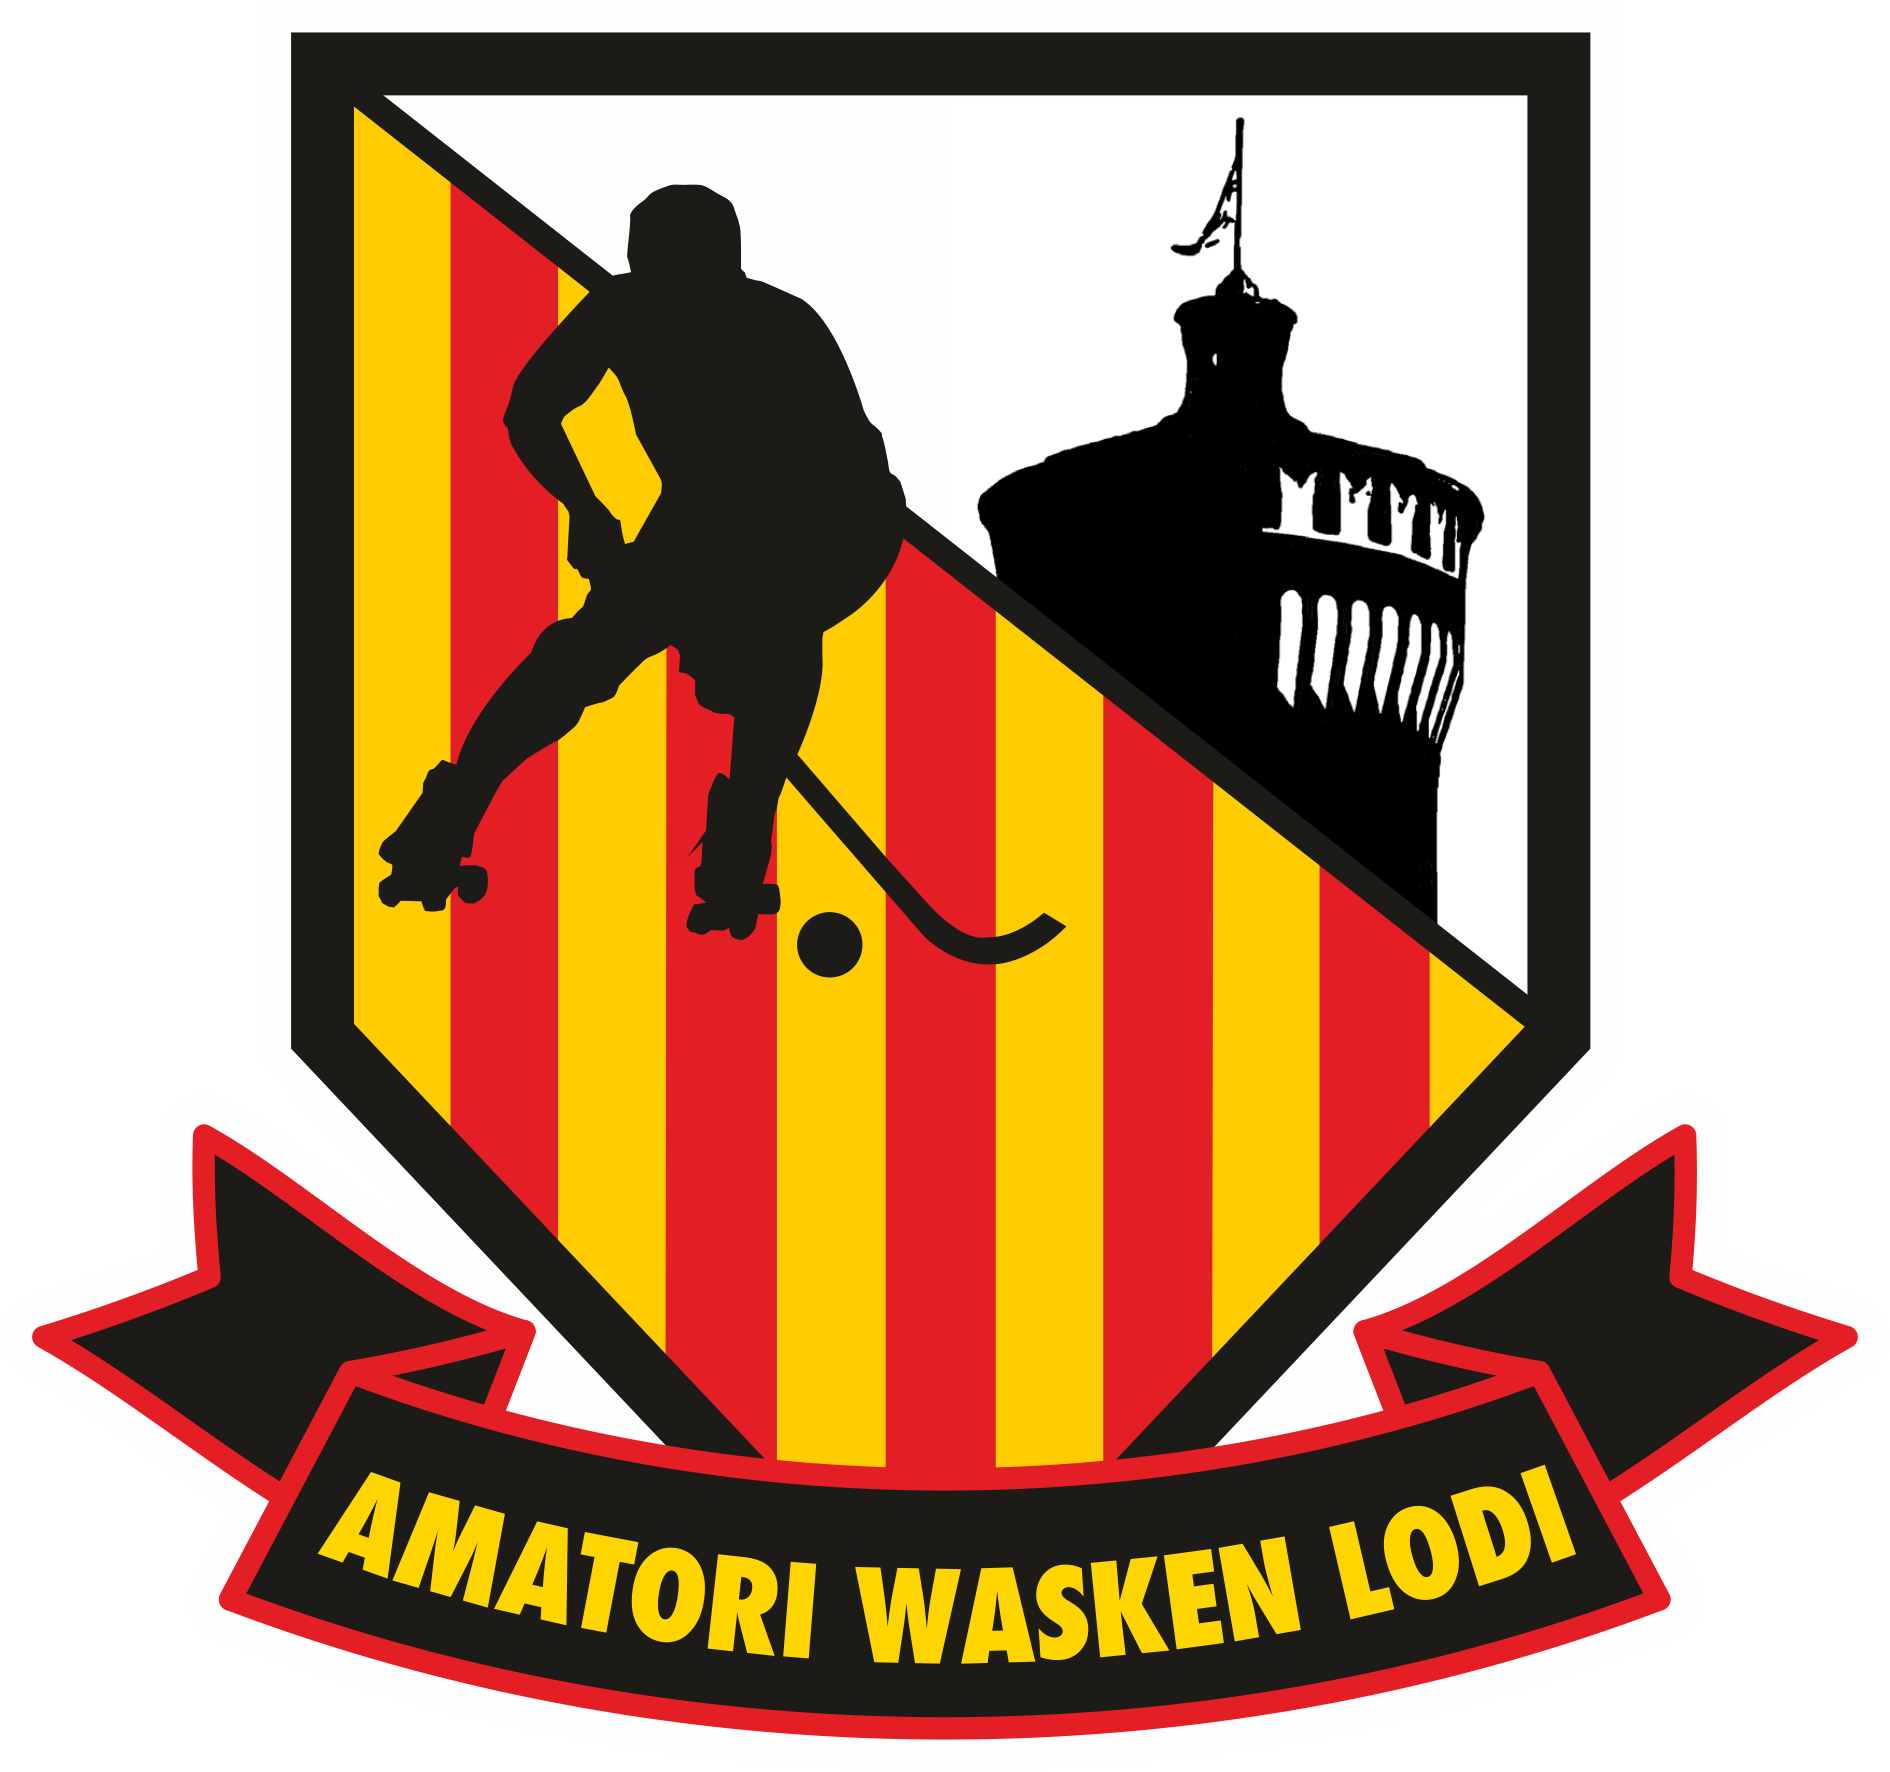 Amatori Wasken Lodi - CLUB WASKEN BOYS a.s.d. | Home